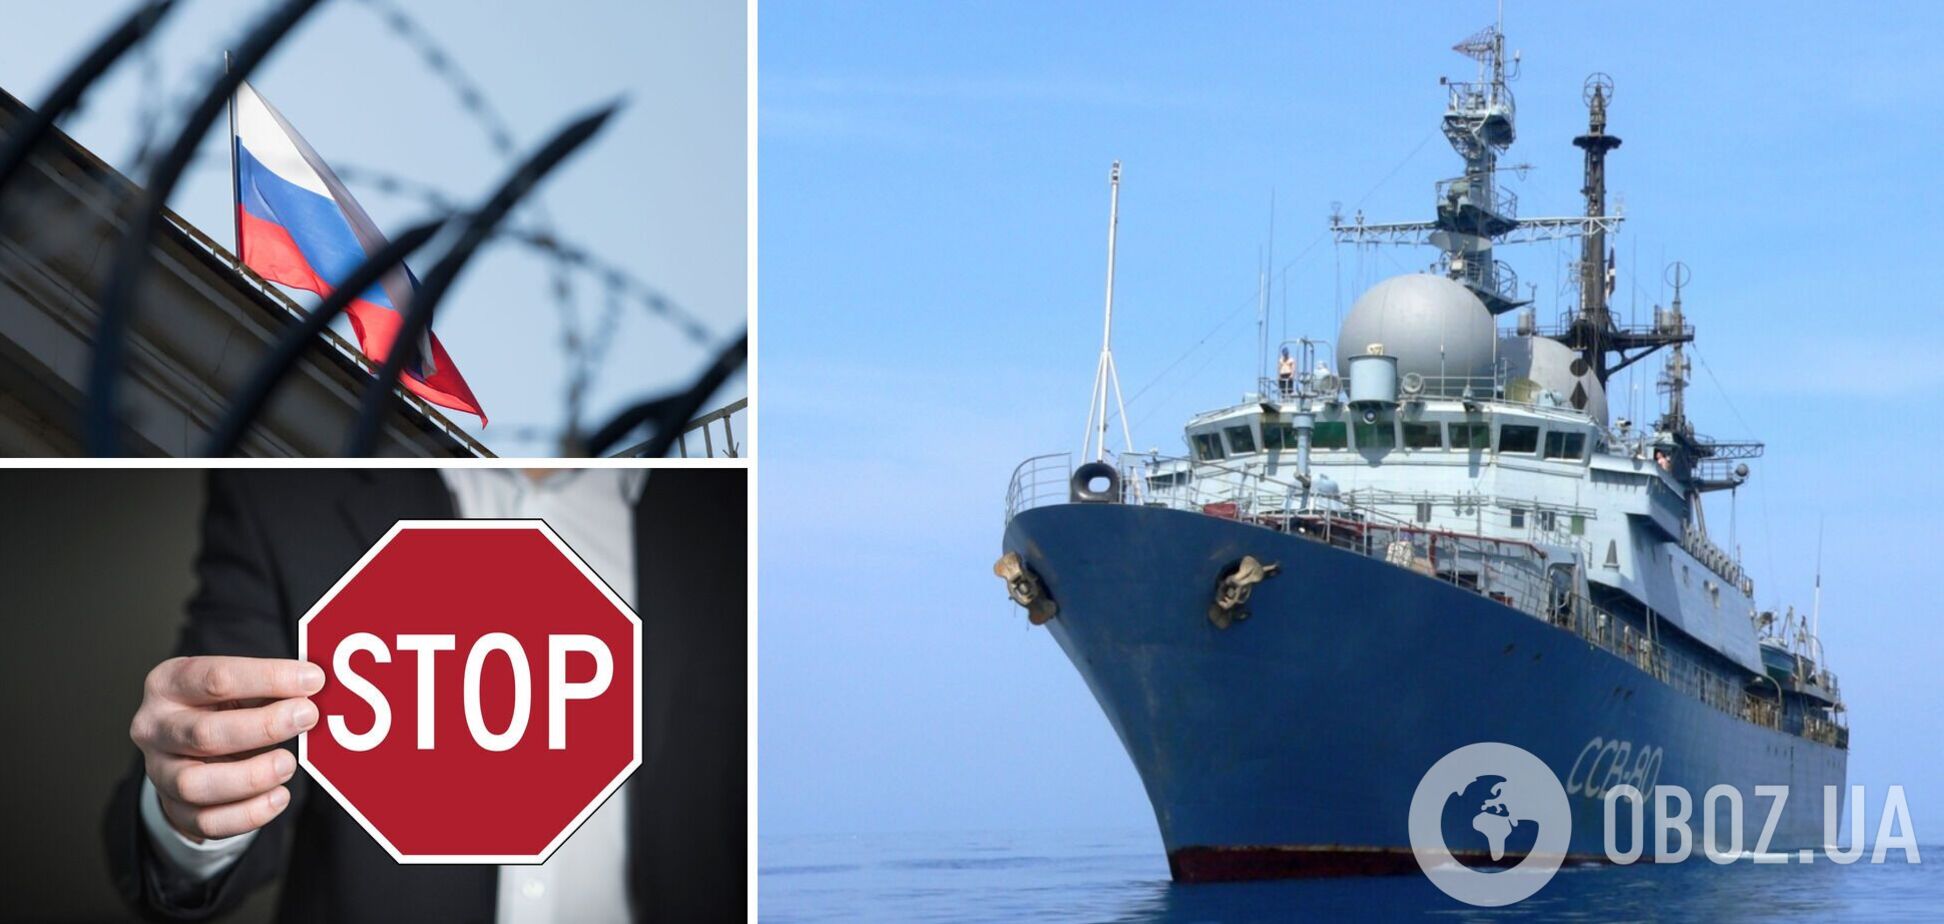 Российские корабли больше не смогут заходить в порты Украины: запрет вступил в силу